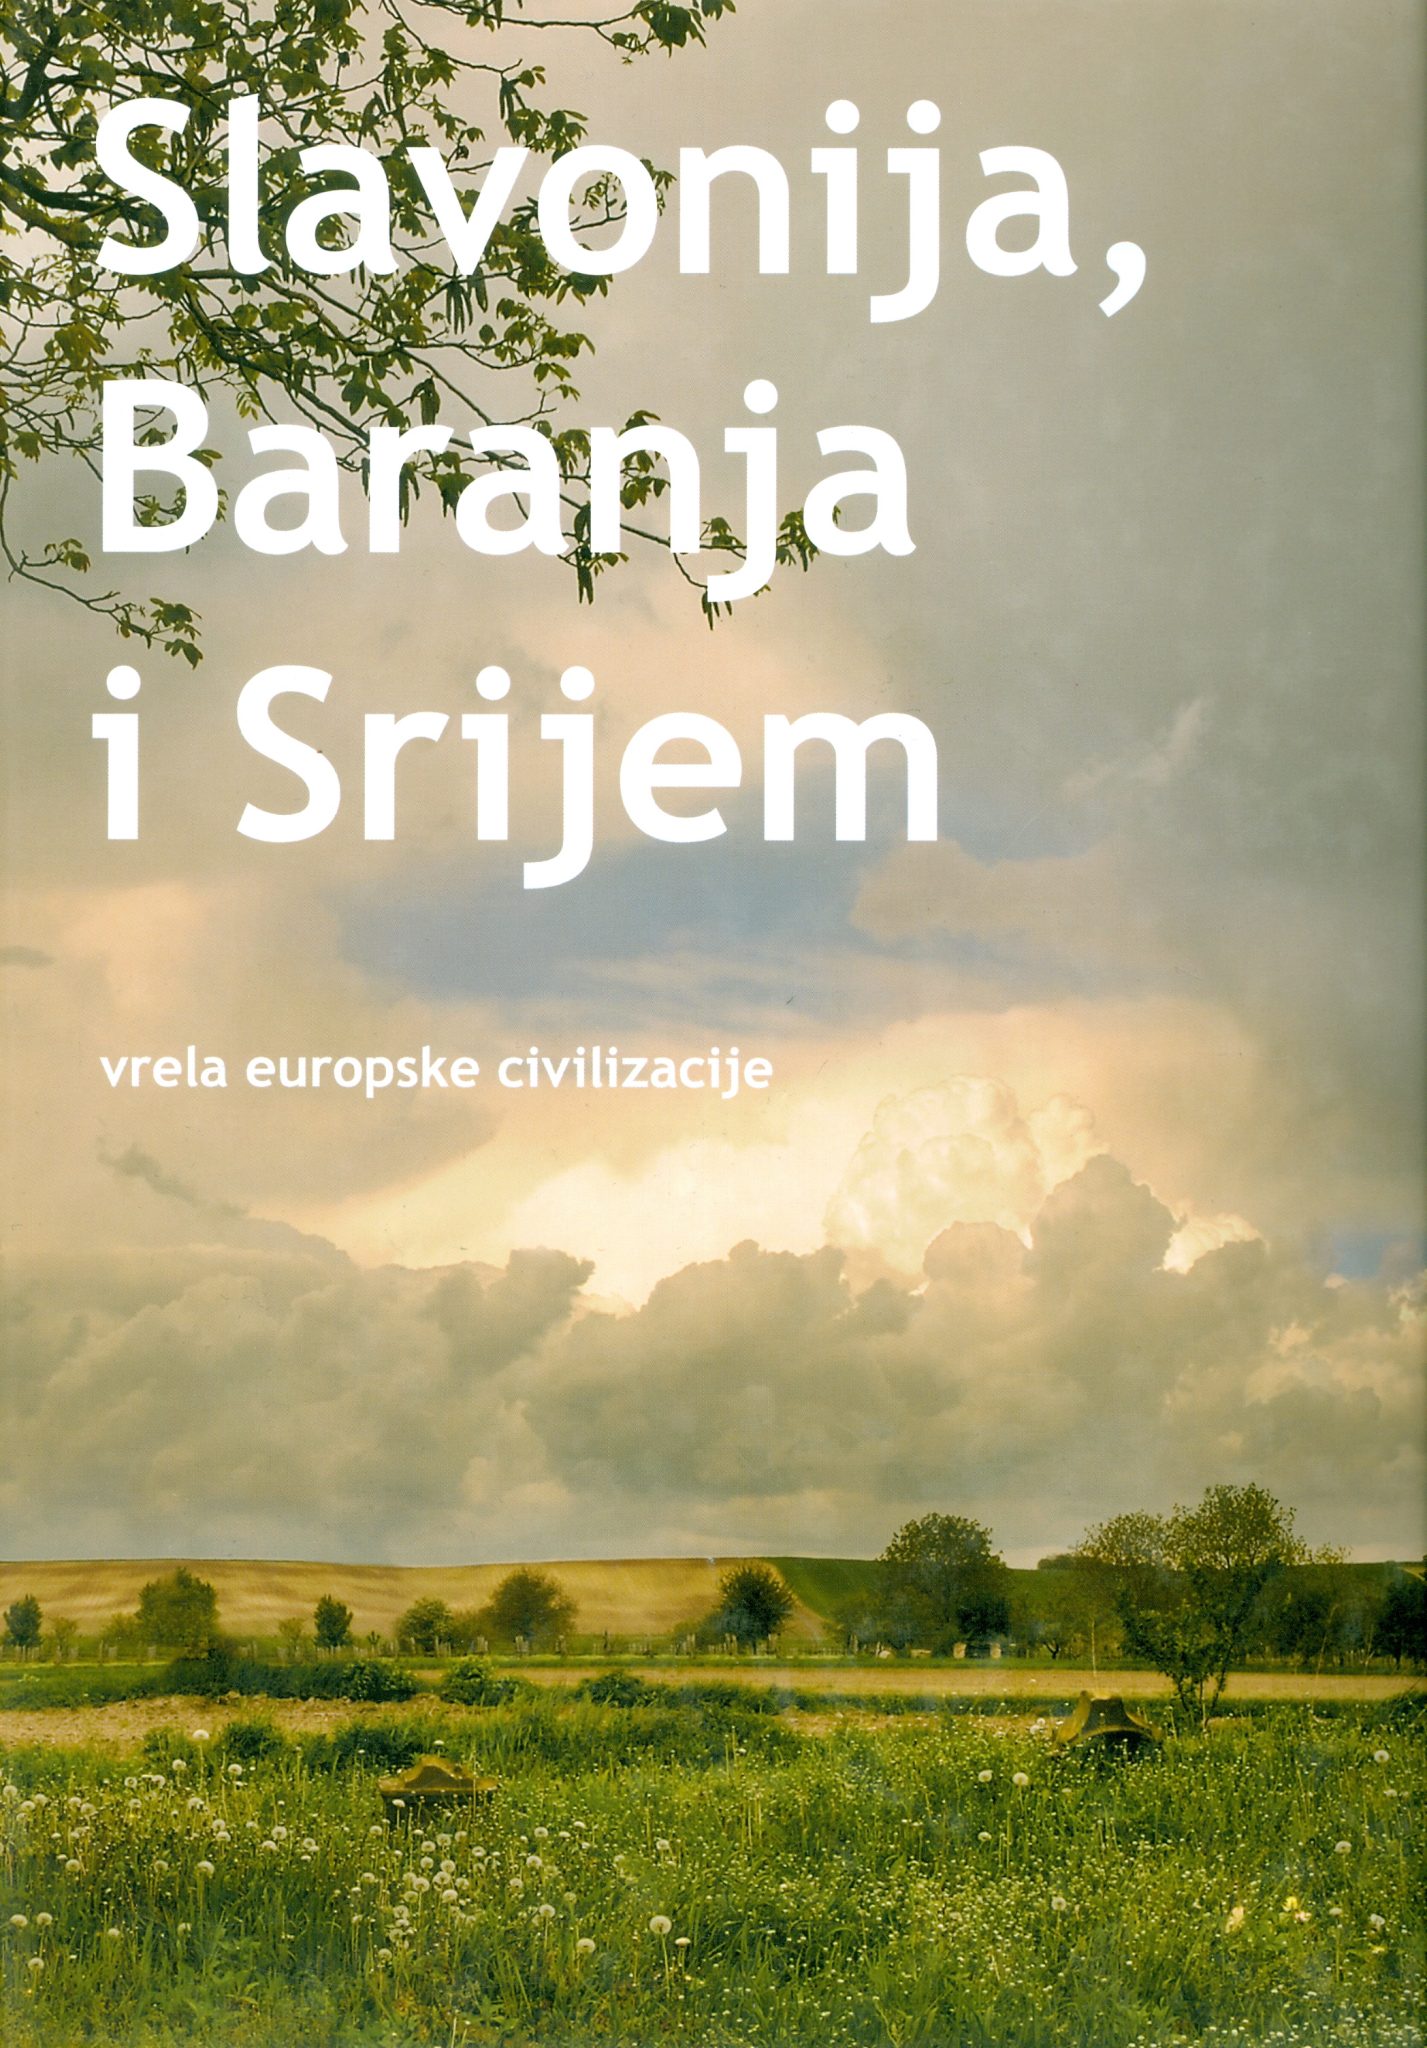 Slavonija, Baranja i Srijem - vrela europske civilizacije G.A.